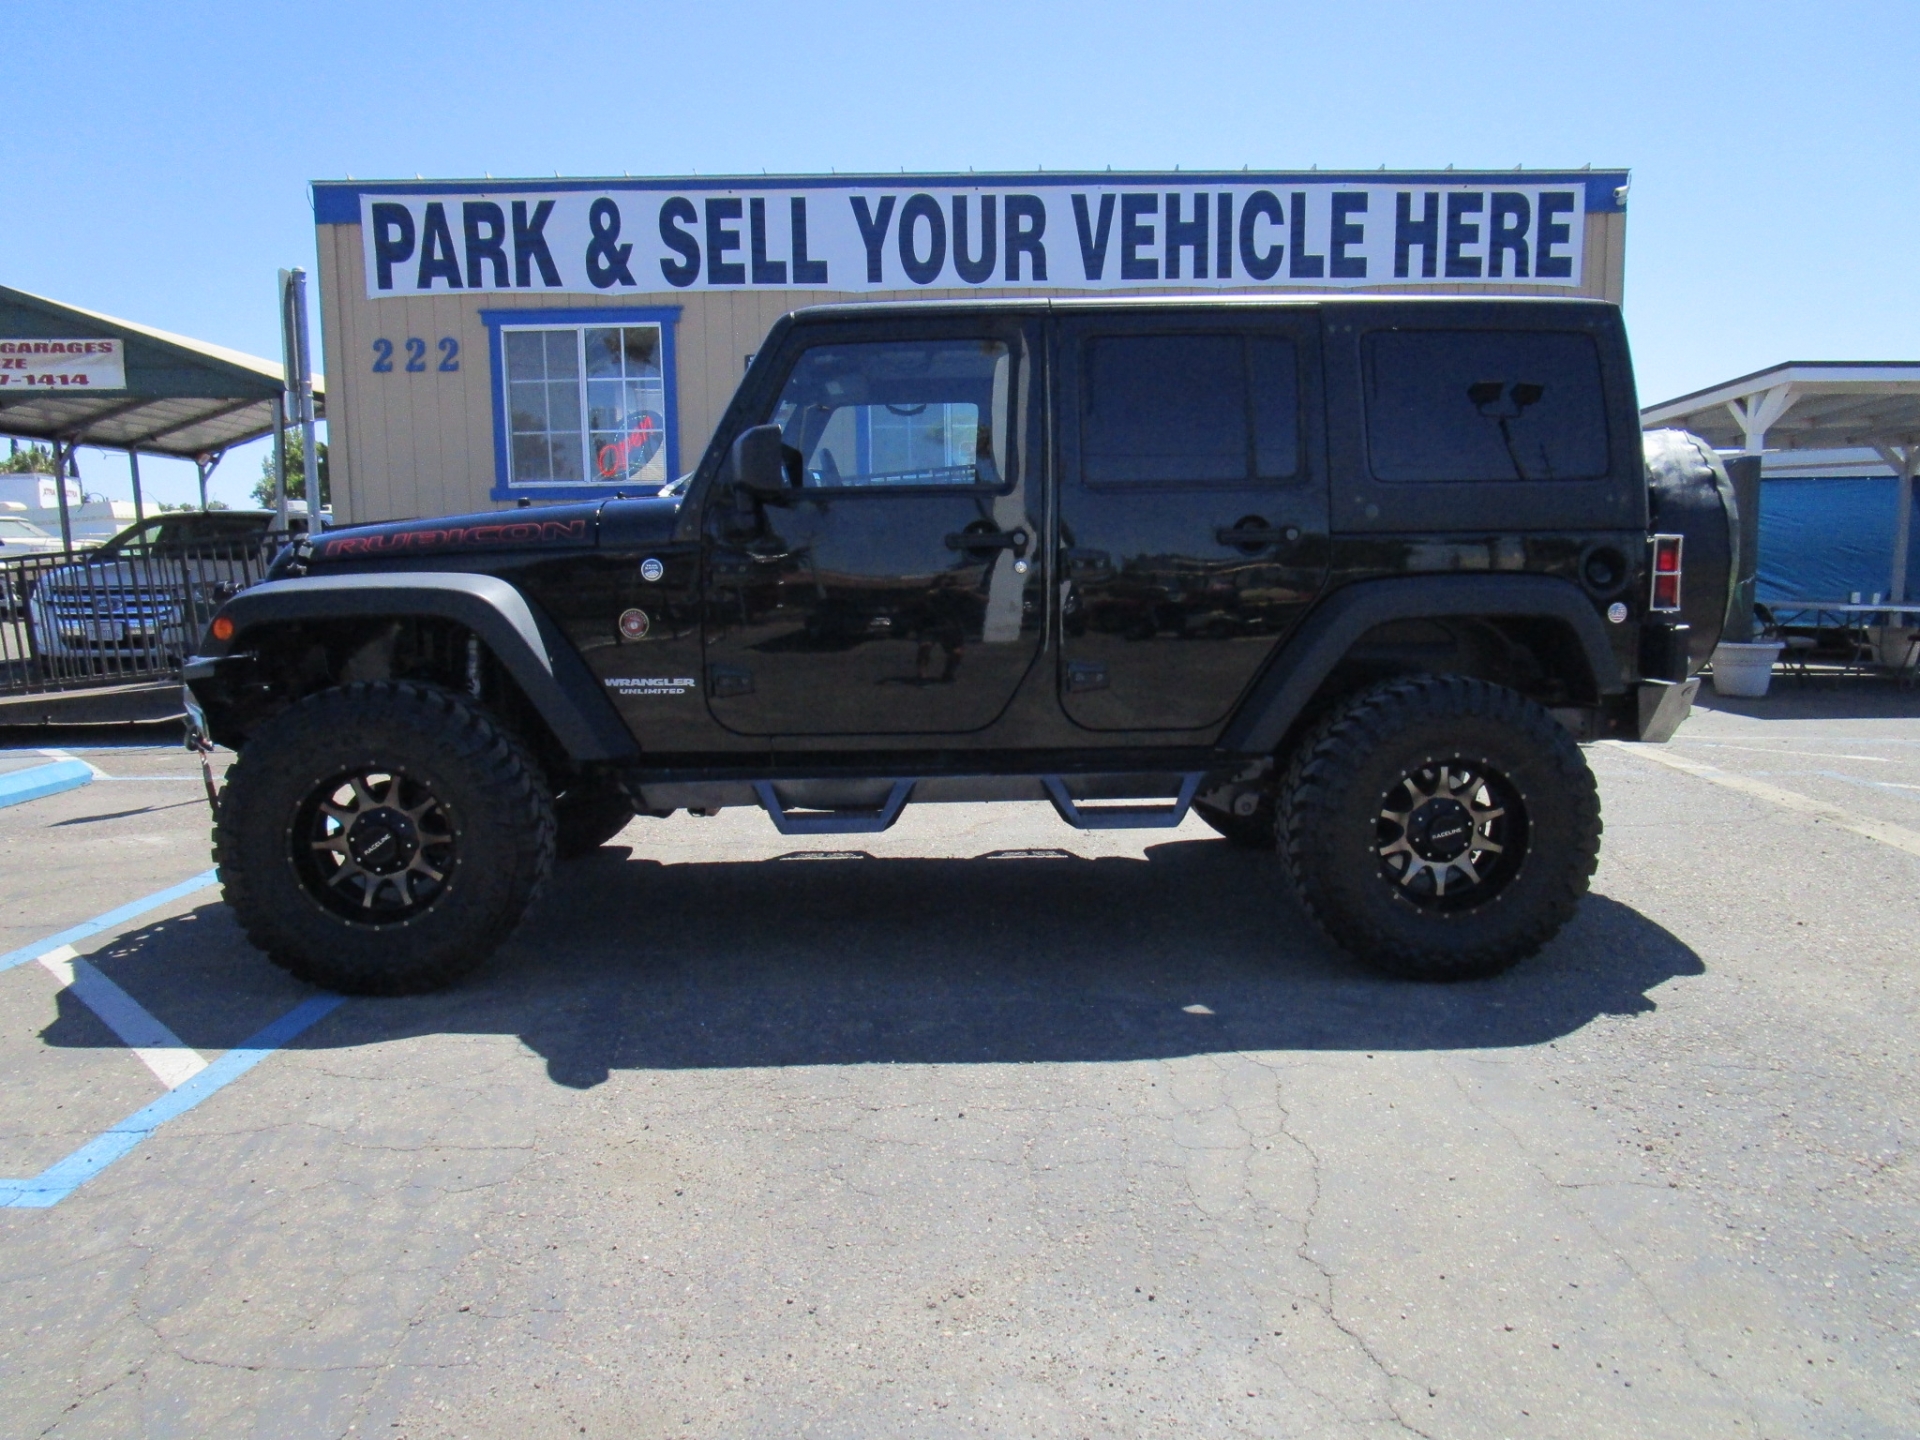 SUV for sale: 2012 Jeep Wrangler Rubicon in Lodi Stockton CA - Lodi Park  and Sell